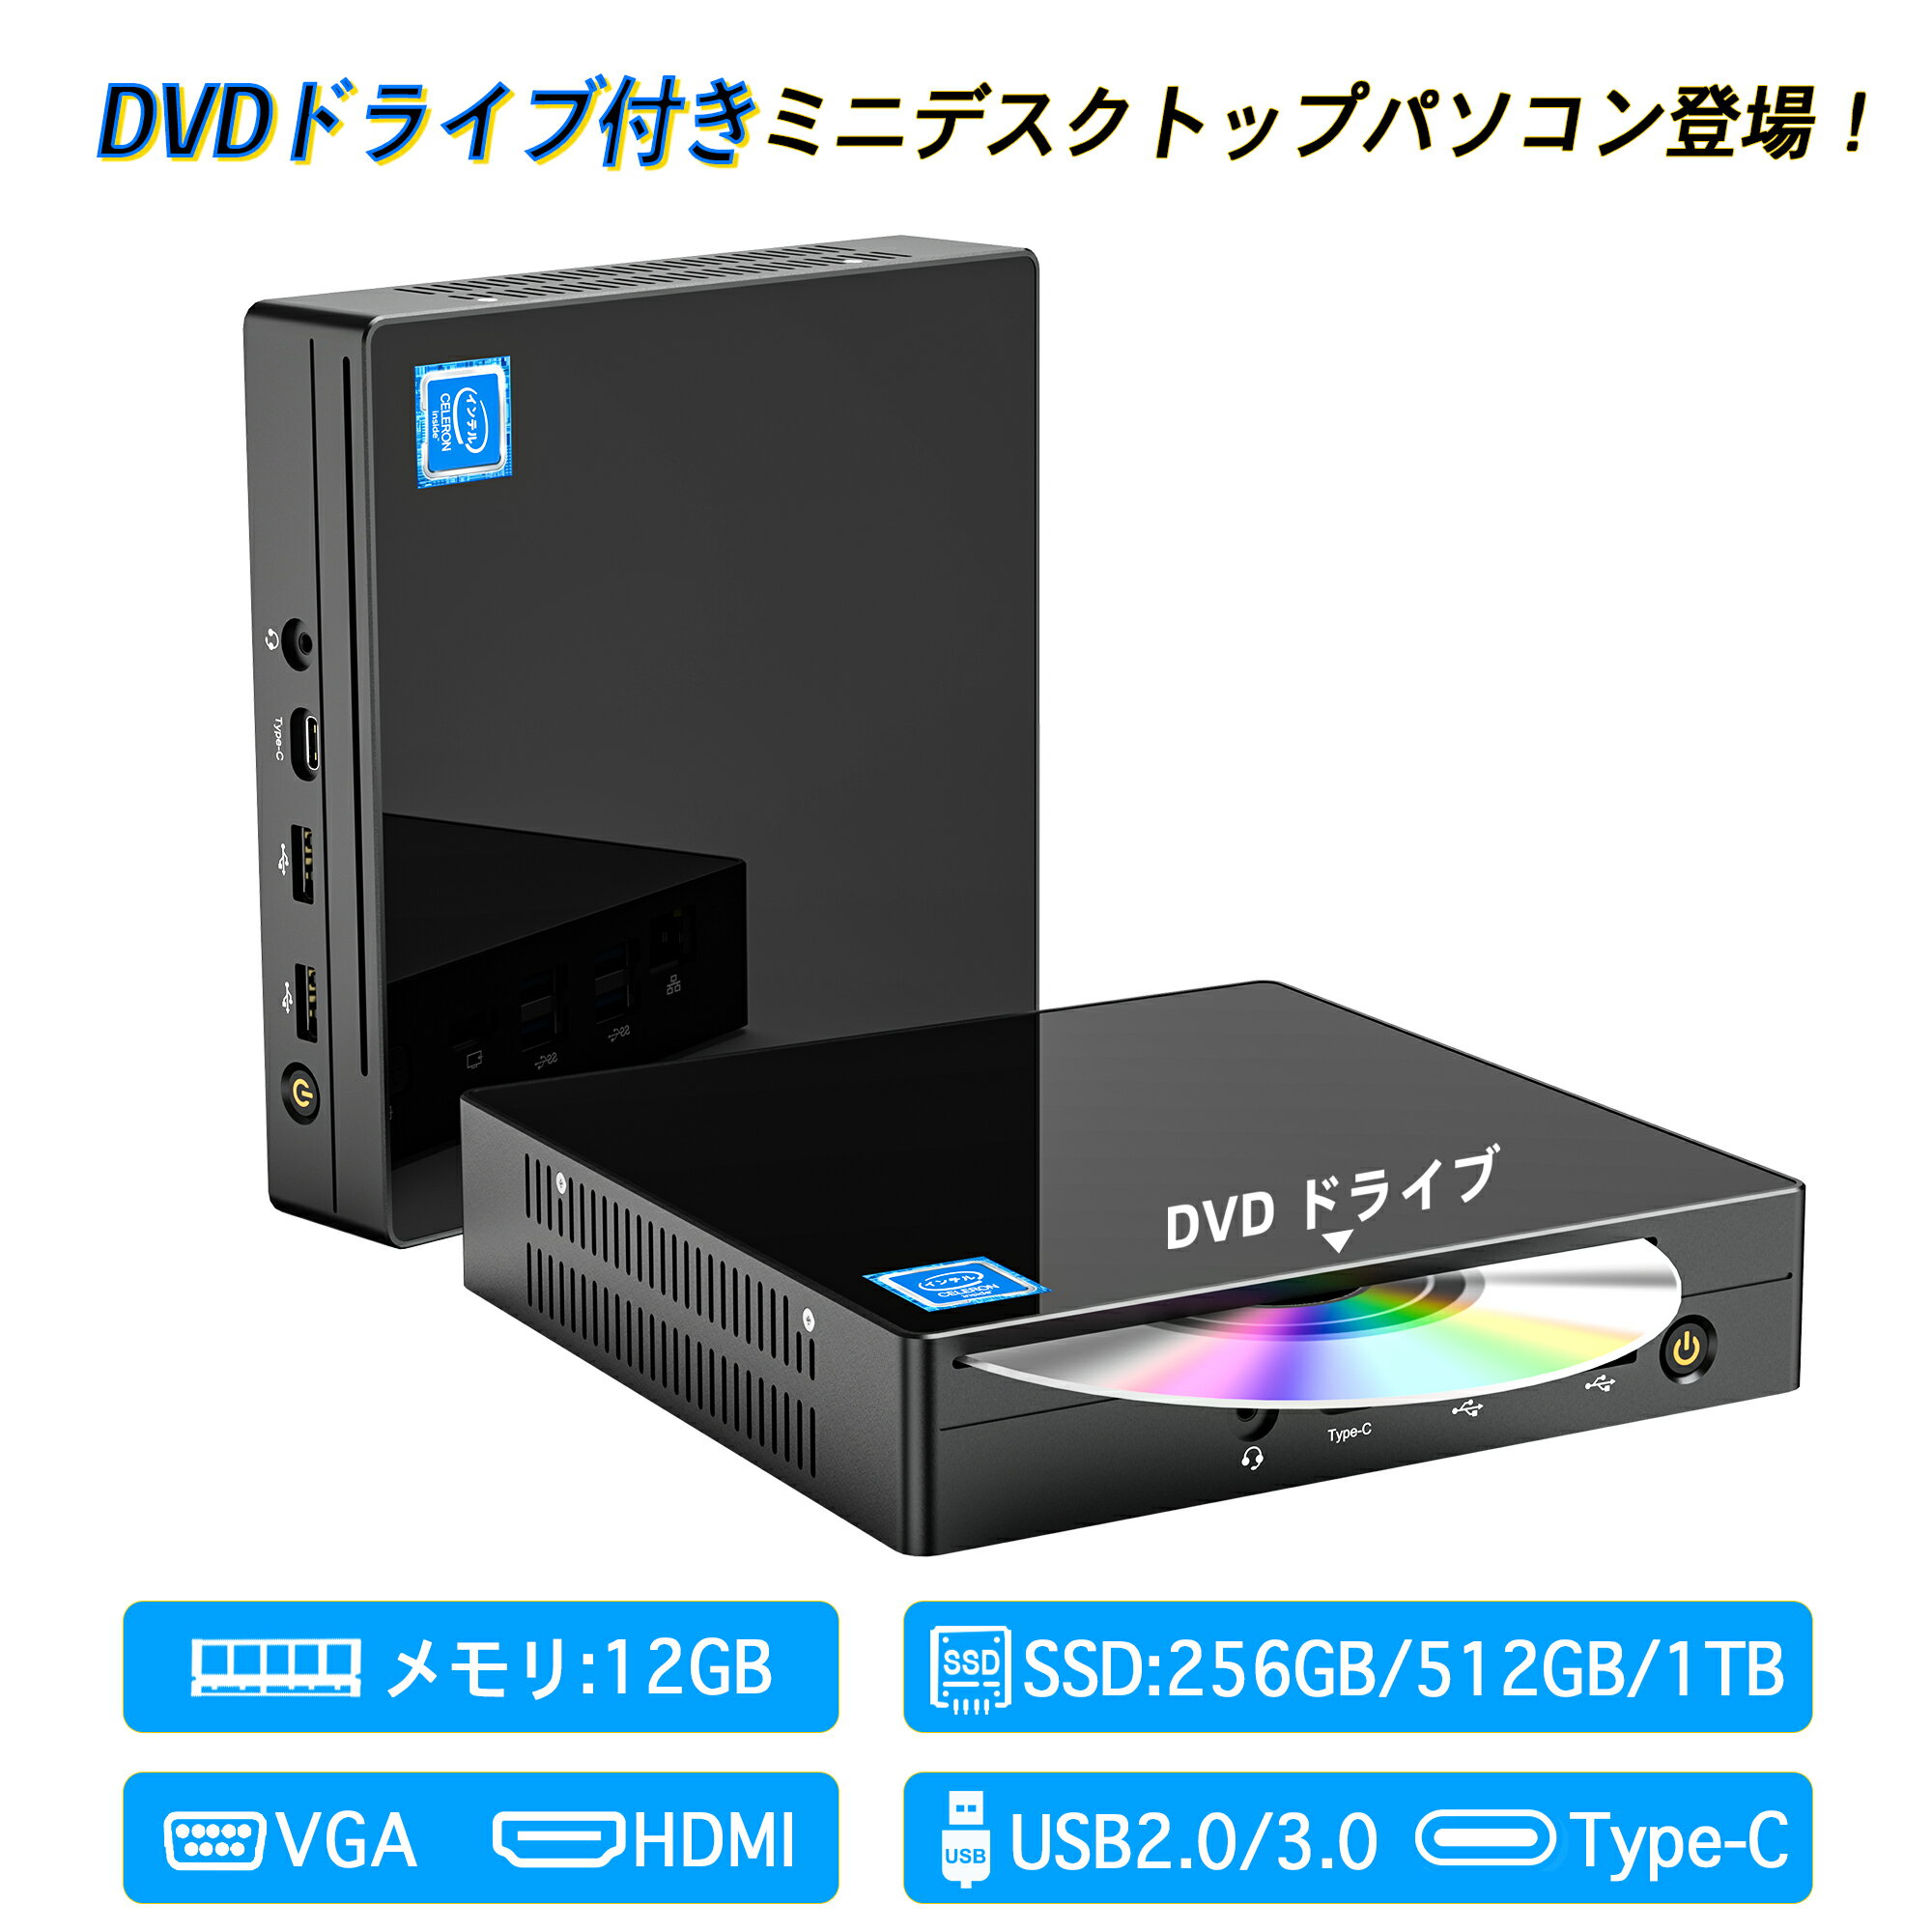 デスクトップパソコンミニPC miniPC DV